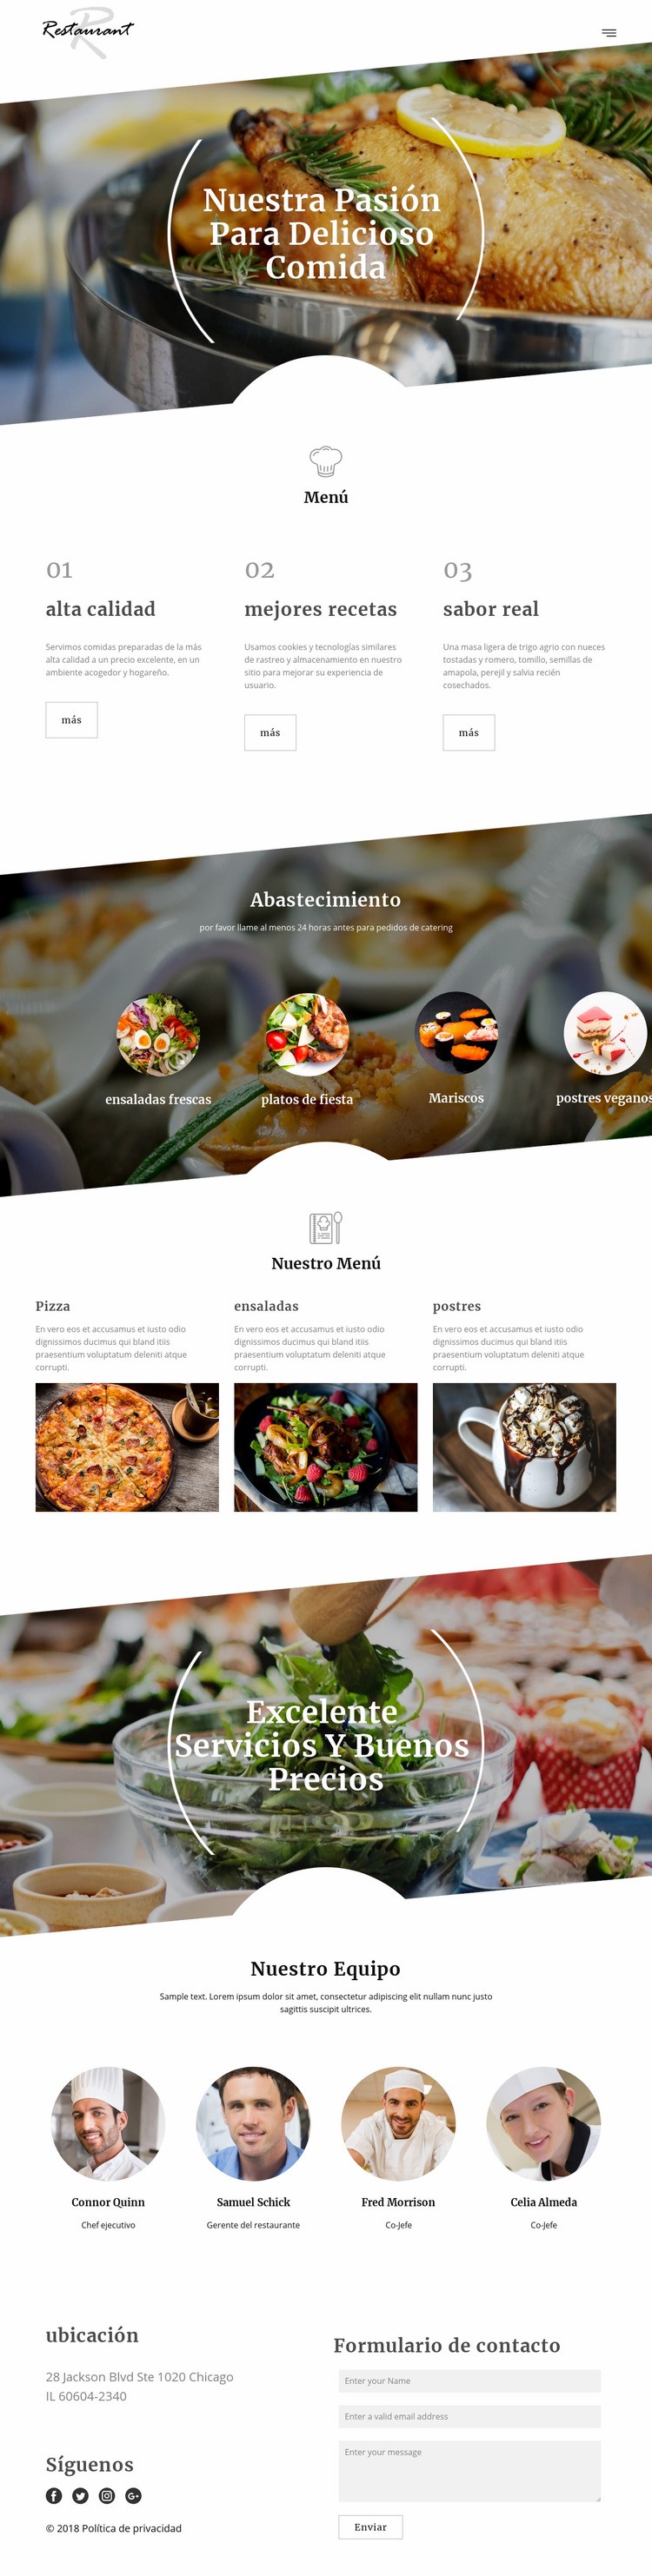 Recetas del chef ejecutivo Diseño de páginas web